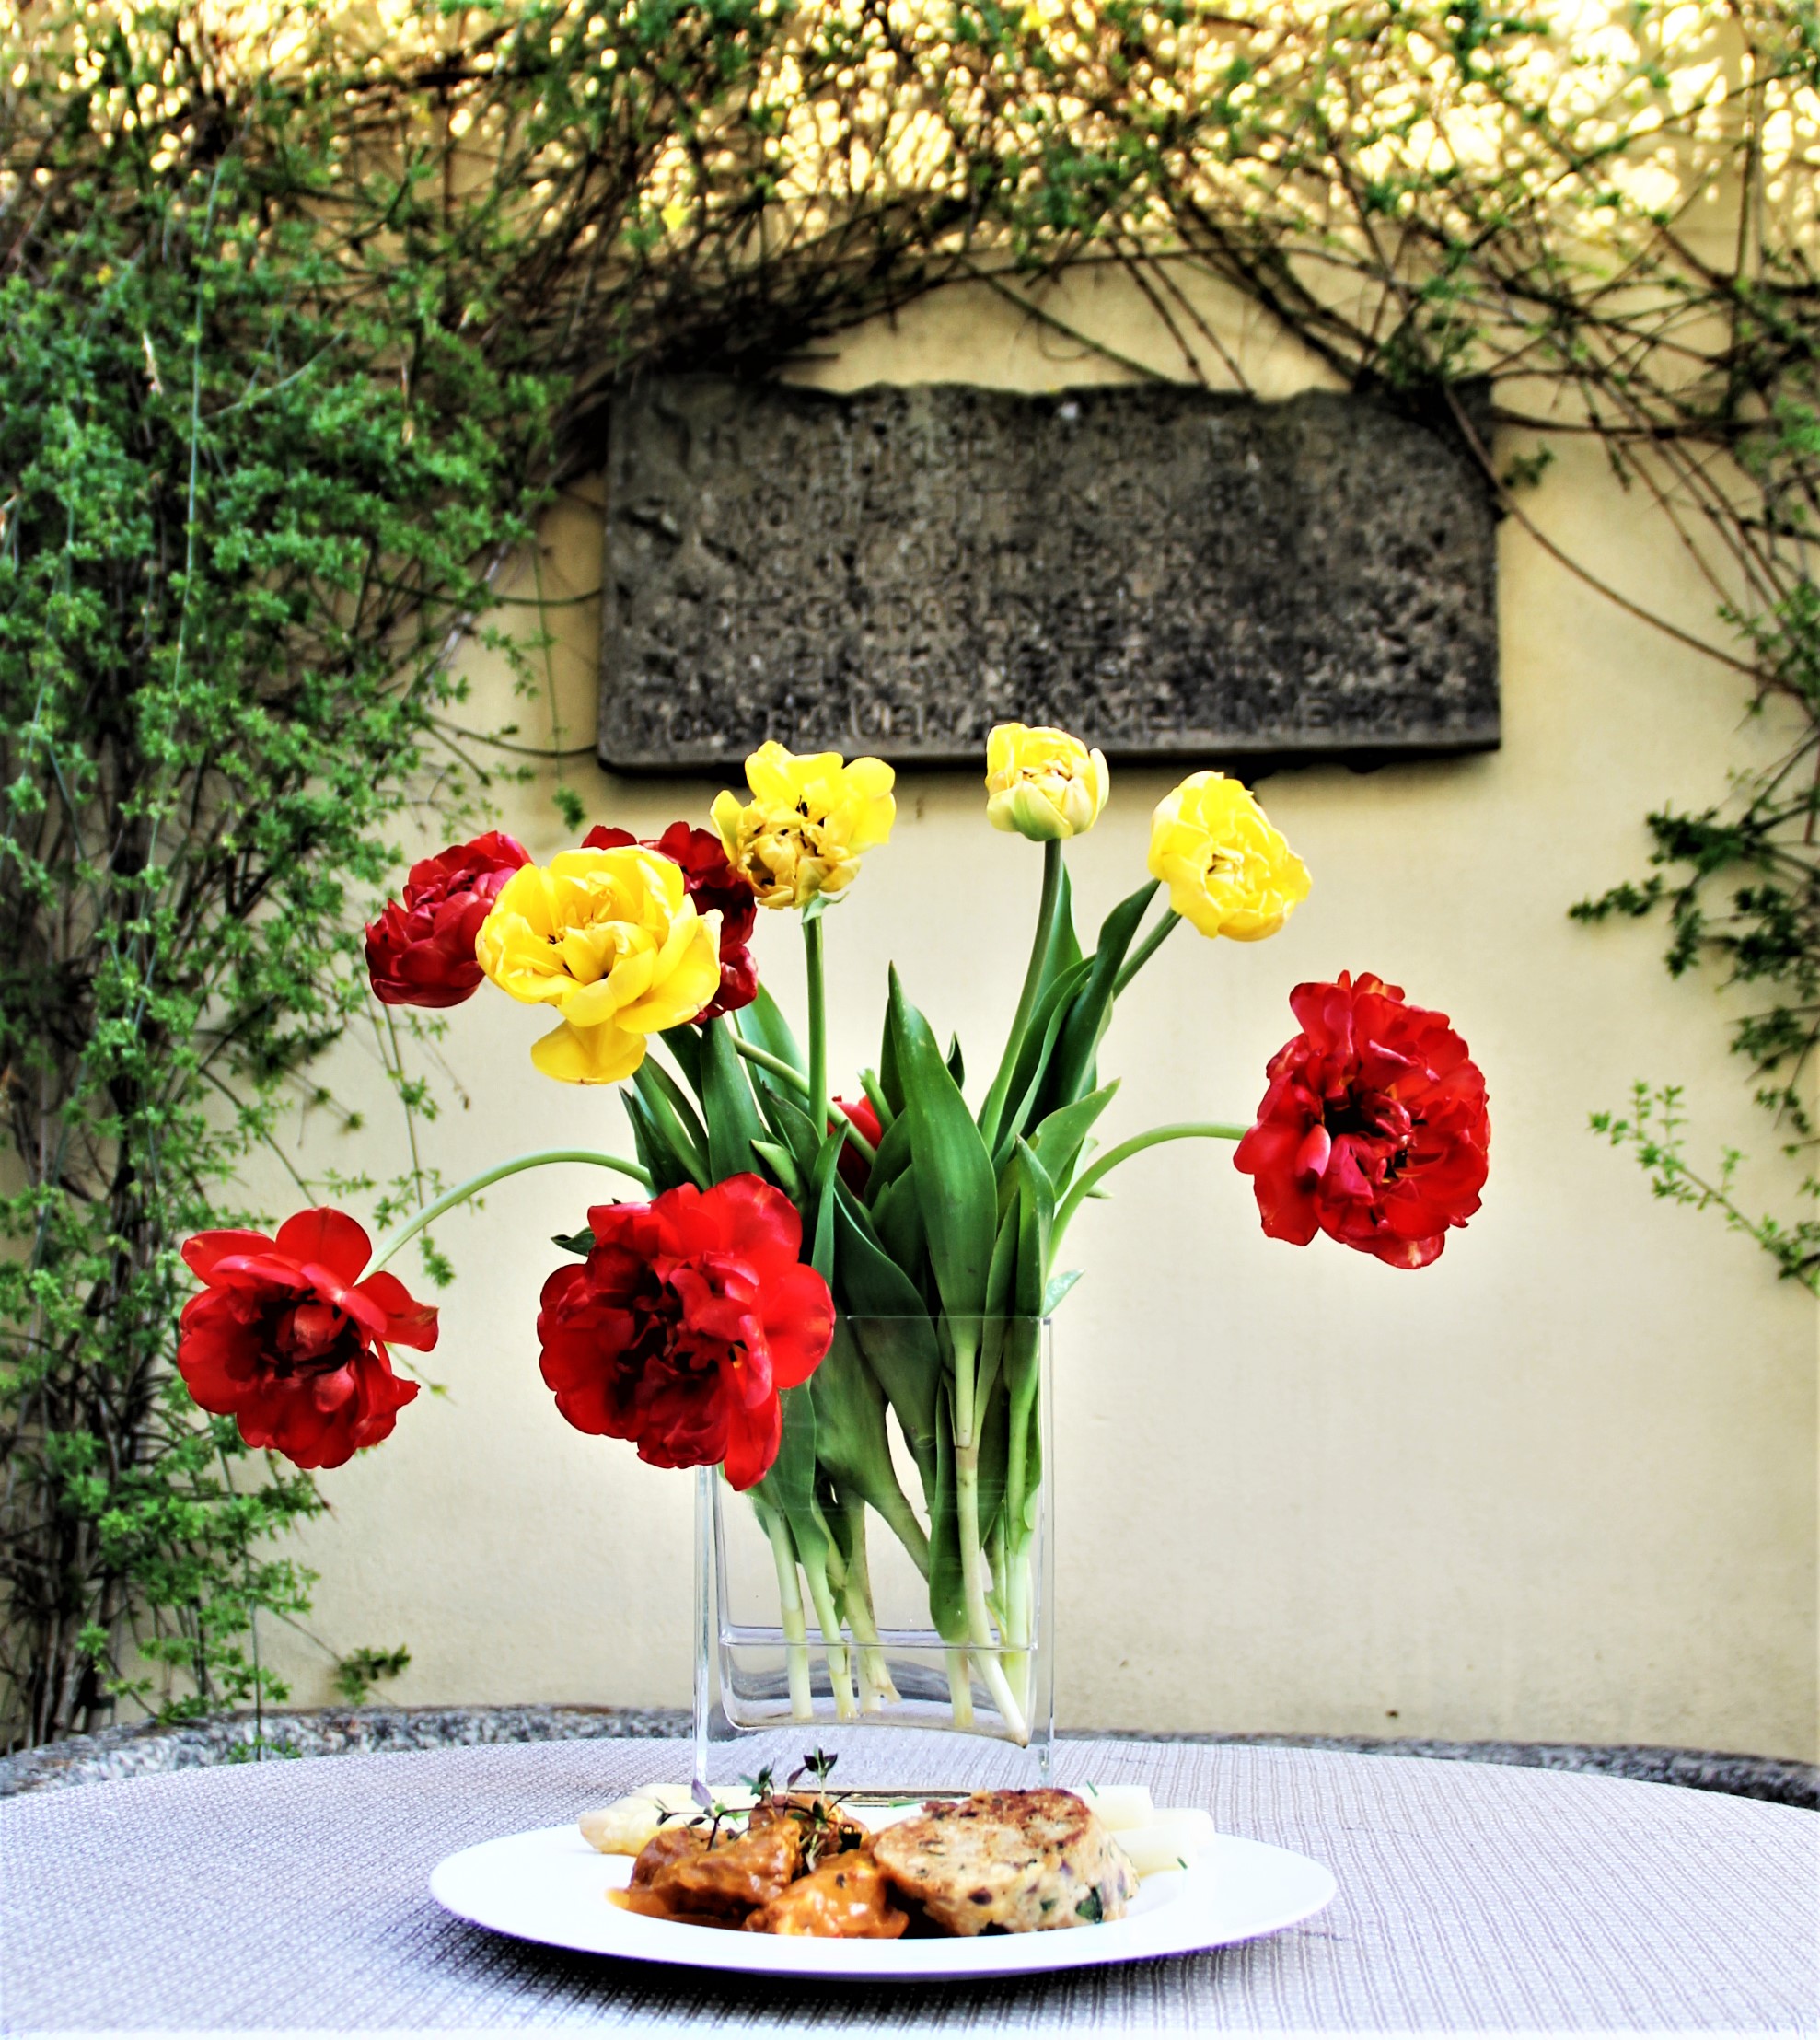  Wiener Kalbsgulasch aus Wittelshofen